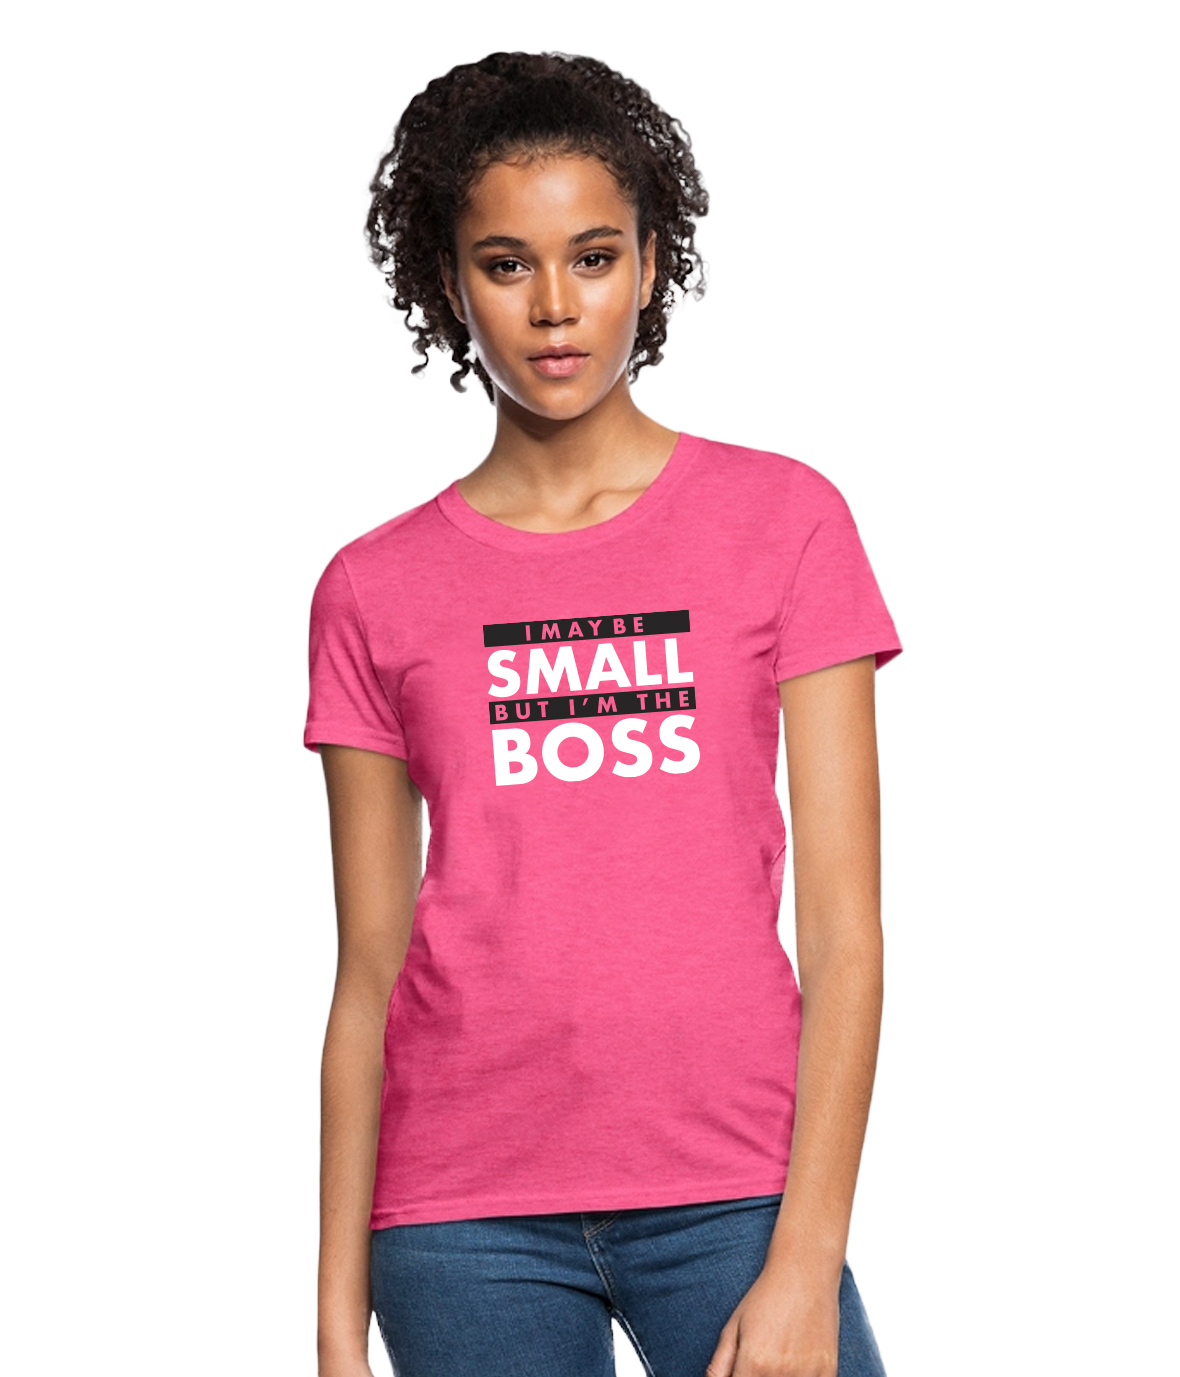 Women's Pink T Shirt - I May Be But I'm The Boss - Office Supplies